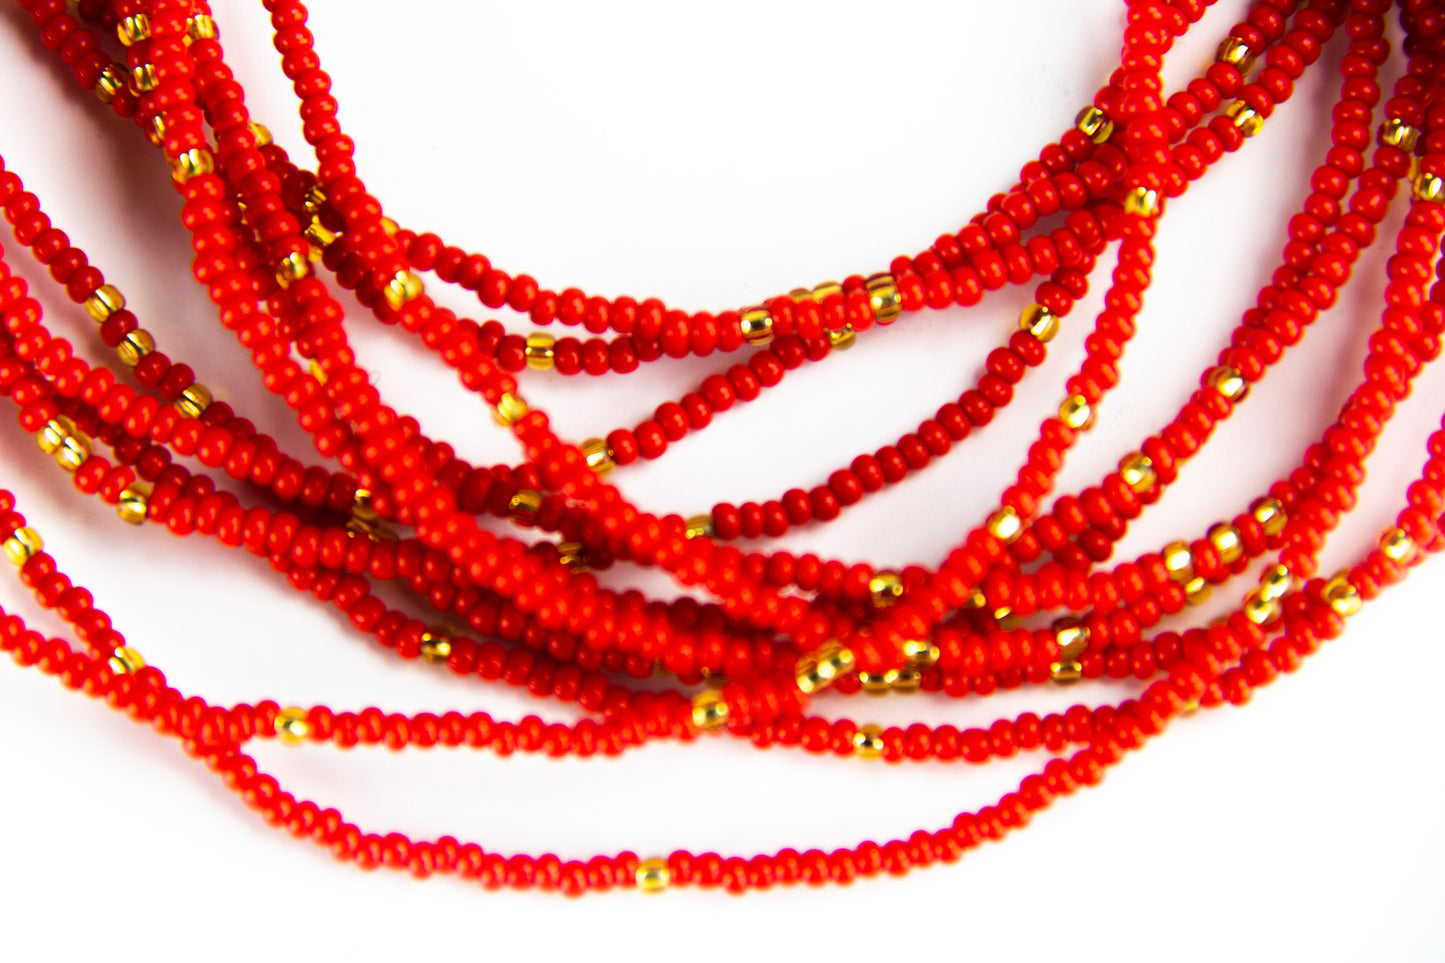 Fire red waist beads